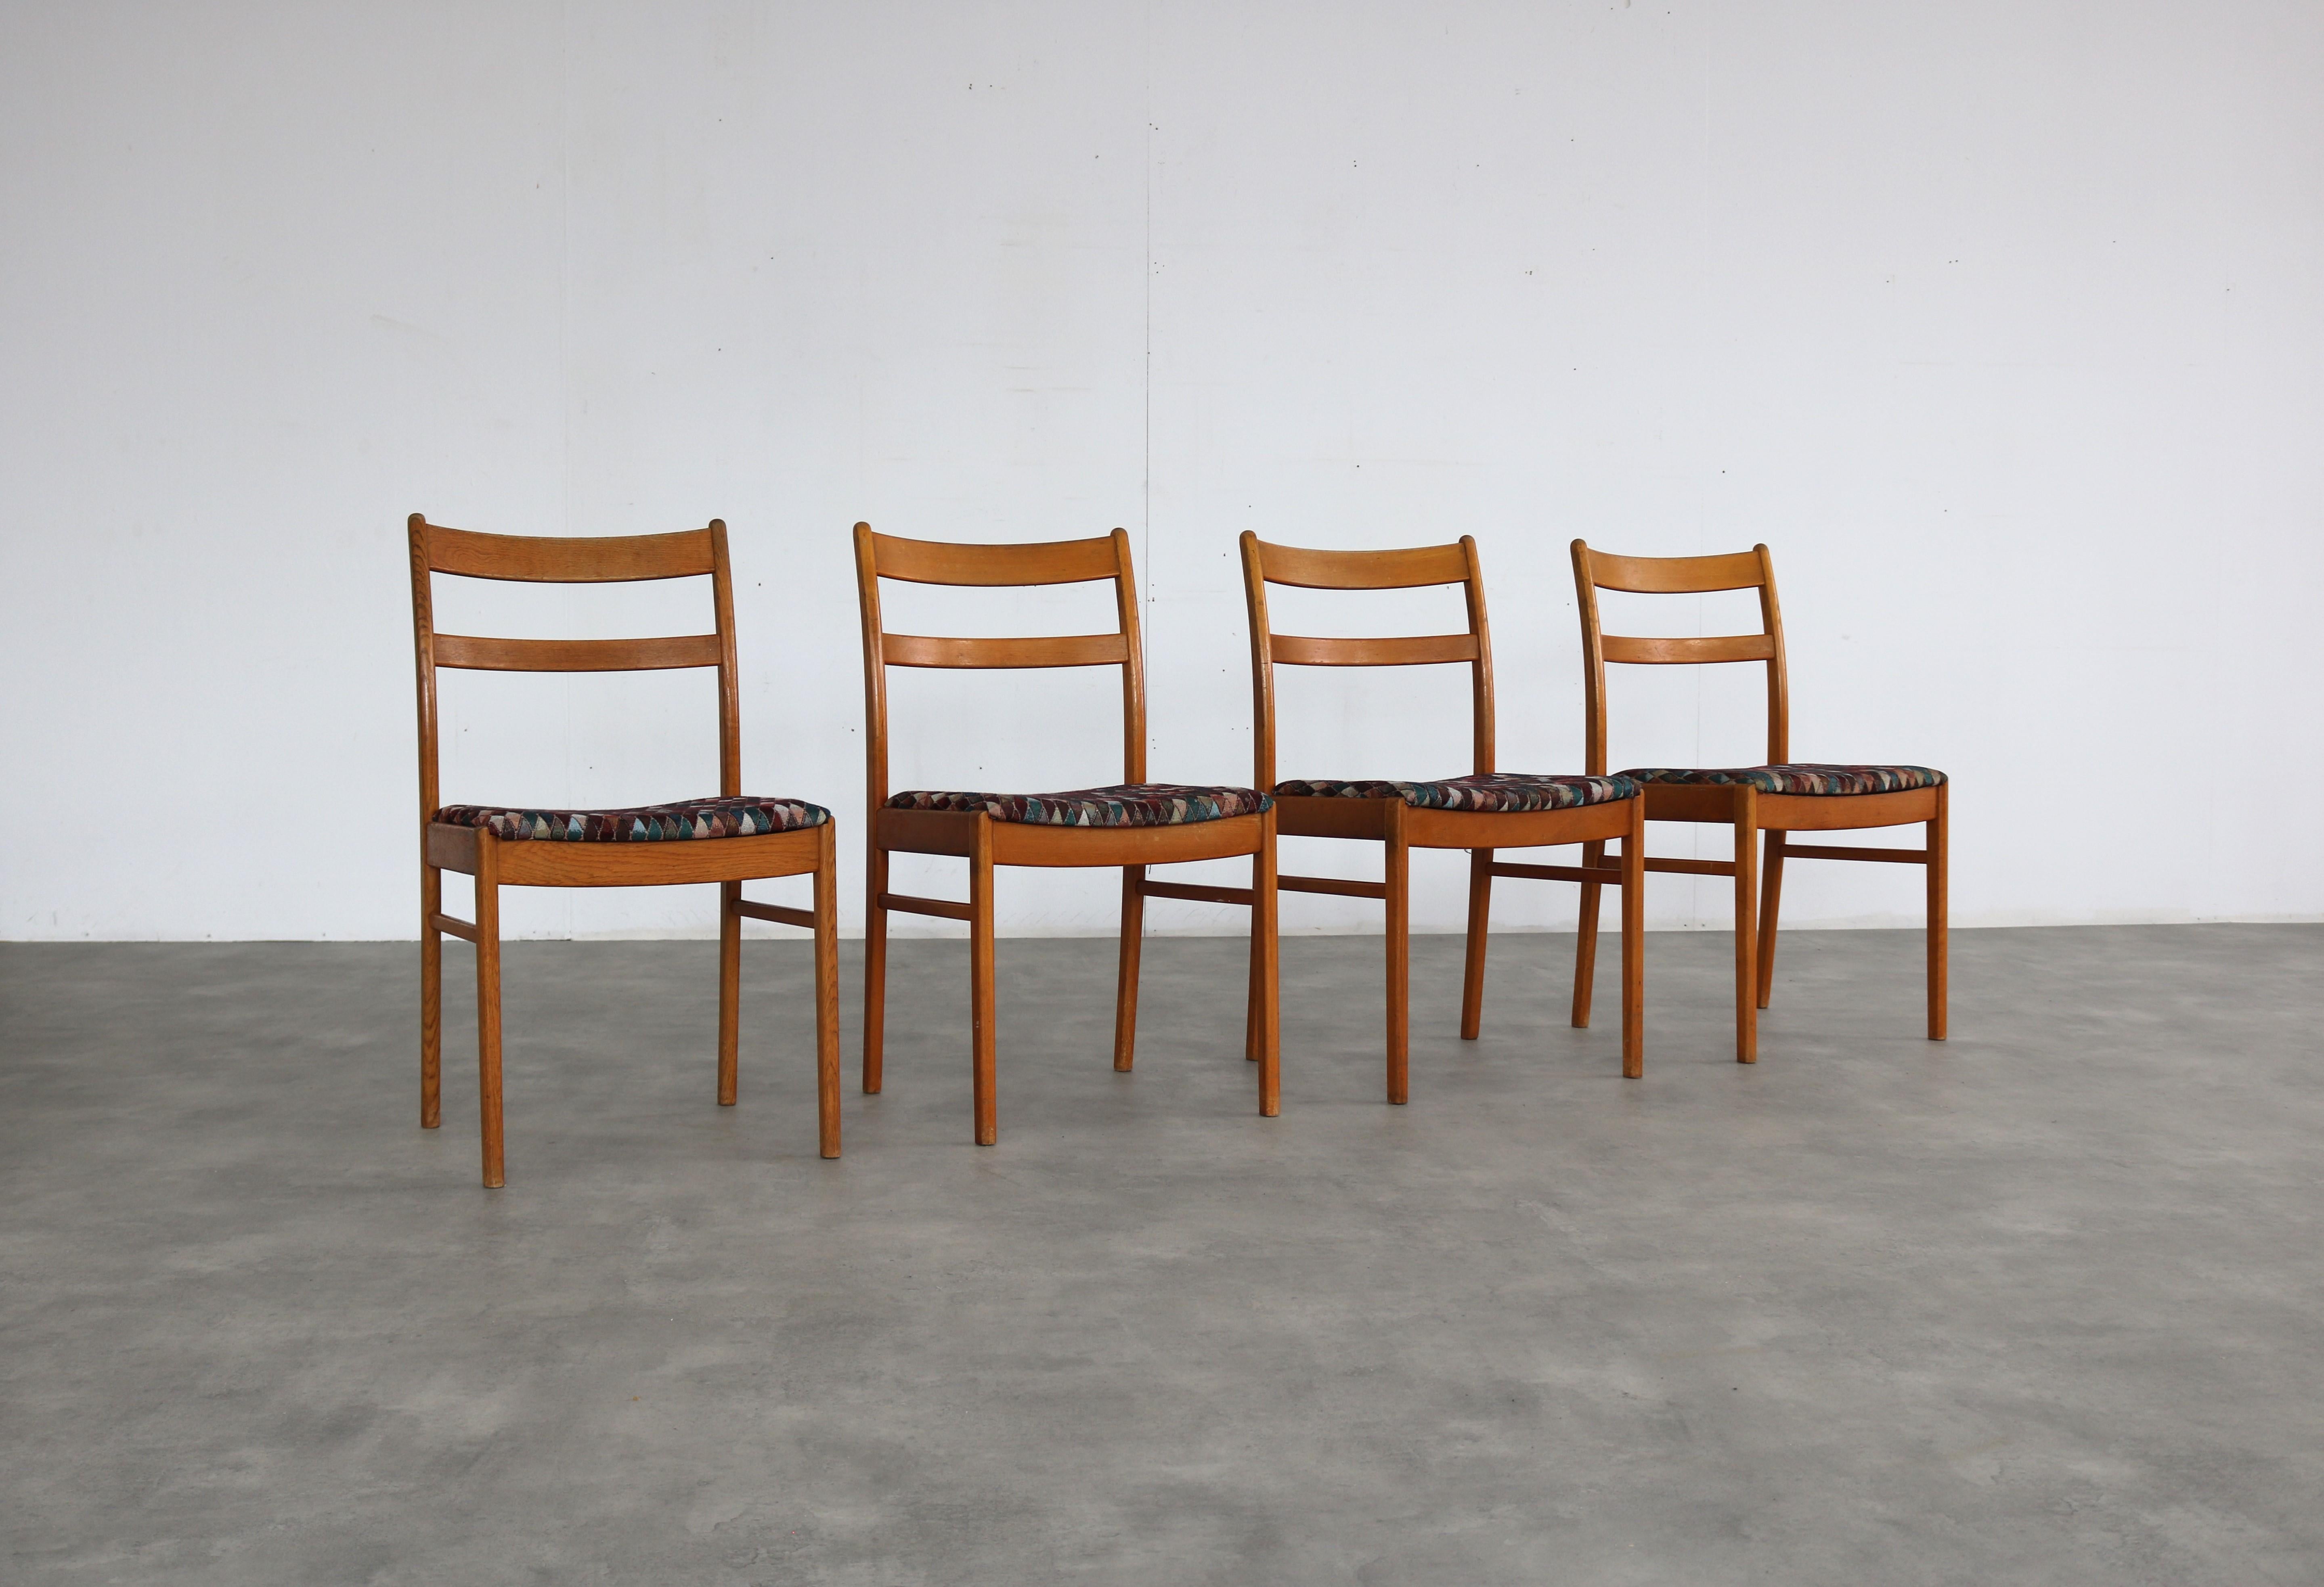 Chaises de salle à manger vintage  chaises  60s  Suède

période  60's
Design/One  inconnu  Suède
condition  bon  légers signes d'utilisation
taille  81 x 45 x 50 (hxwxd) hauteur du siège 44 ;

détails  chêne ; tapisserie ; ensemble de 4 ;

numéro